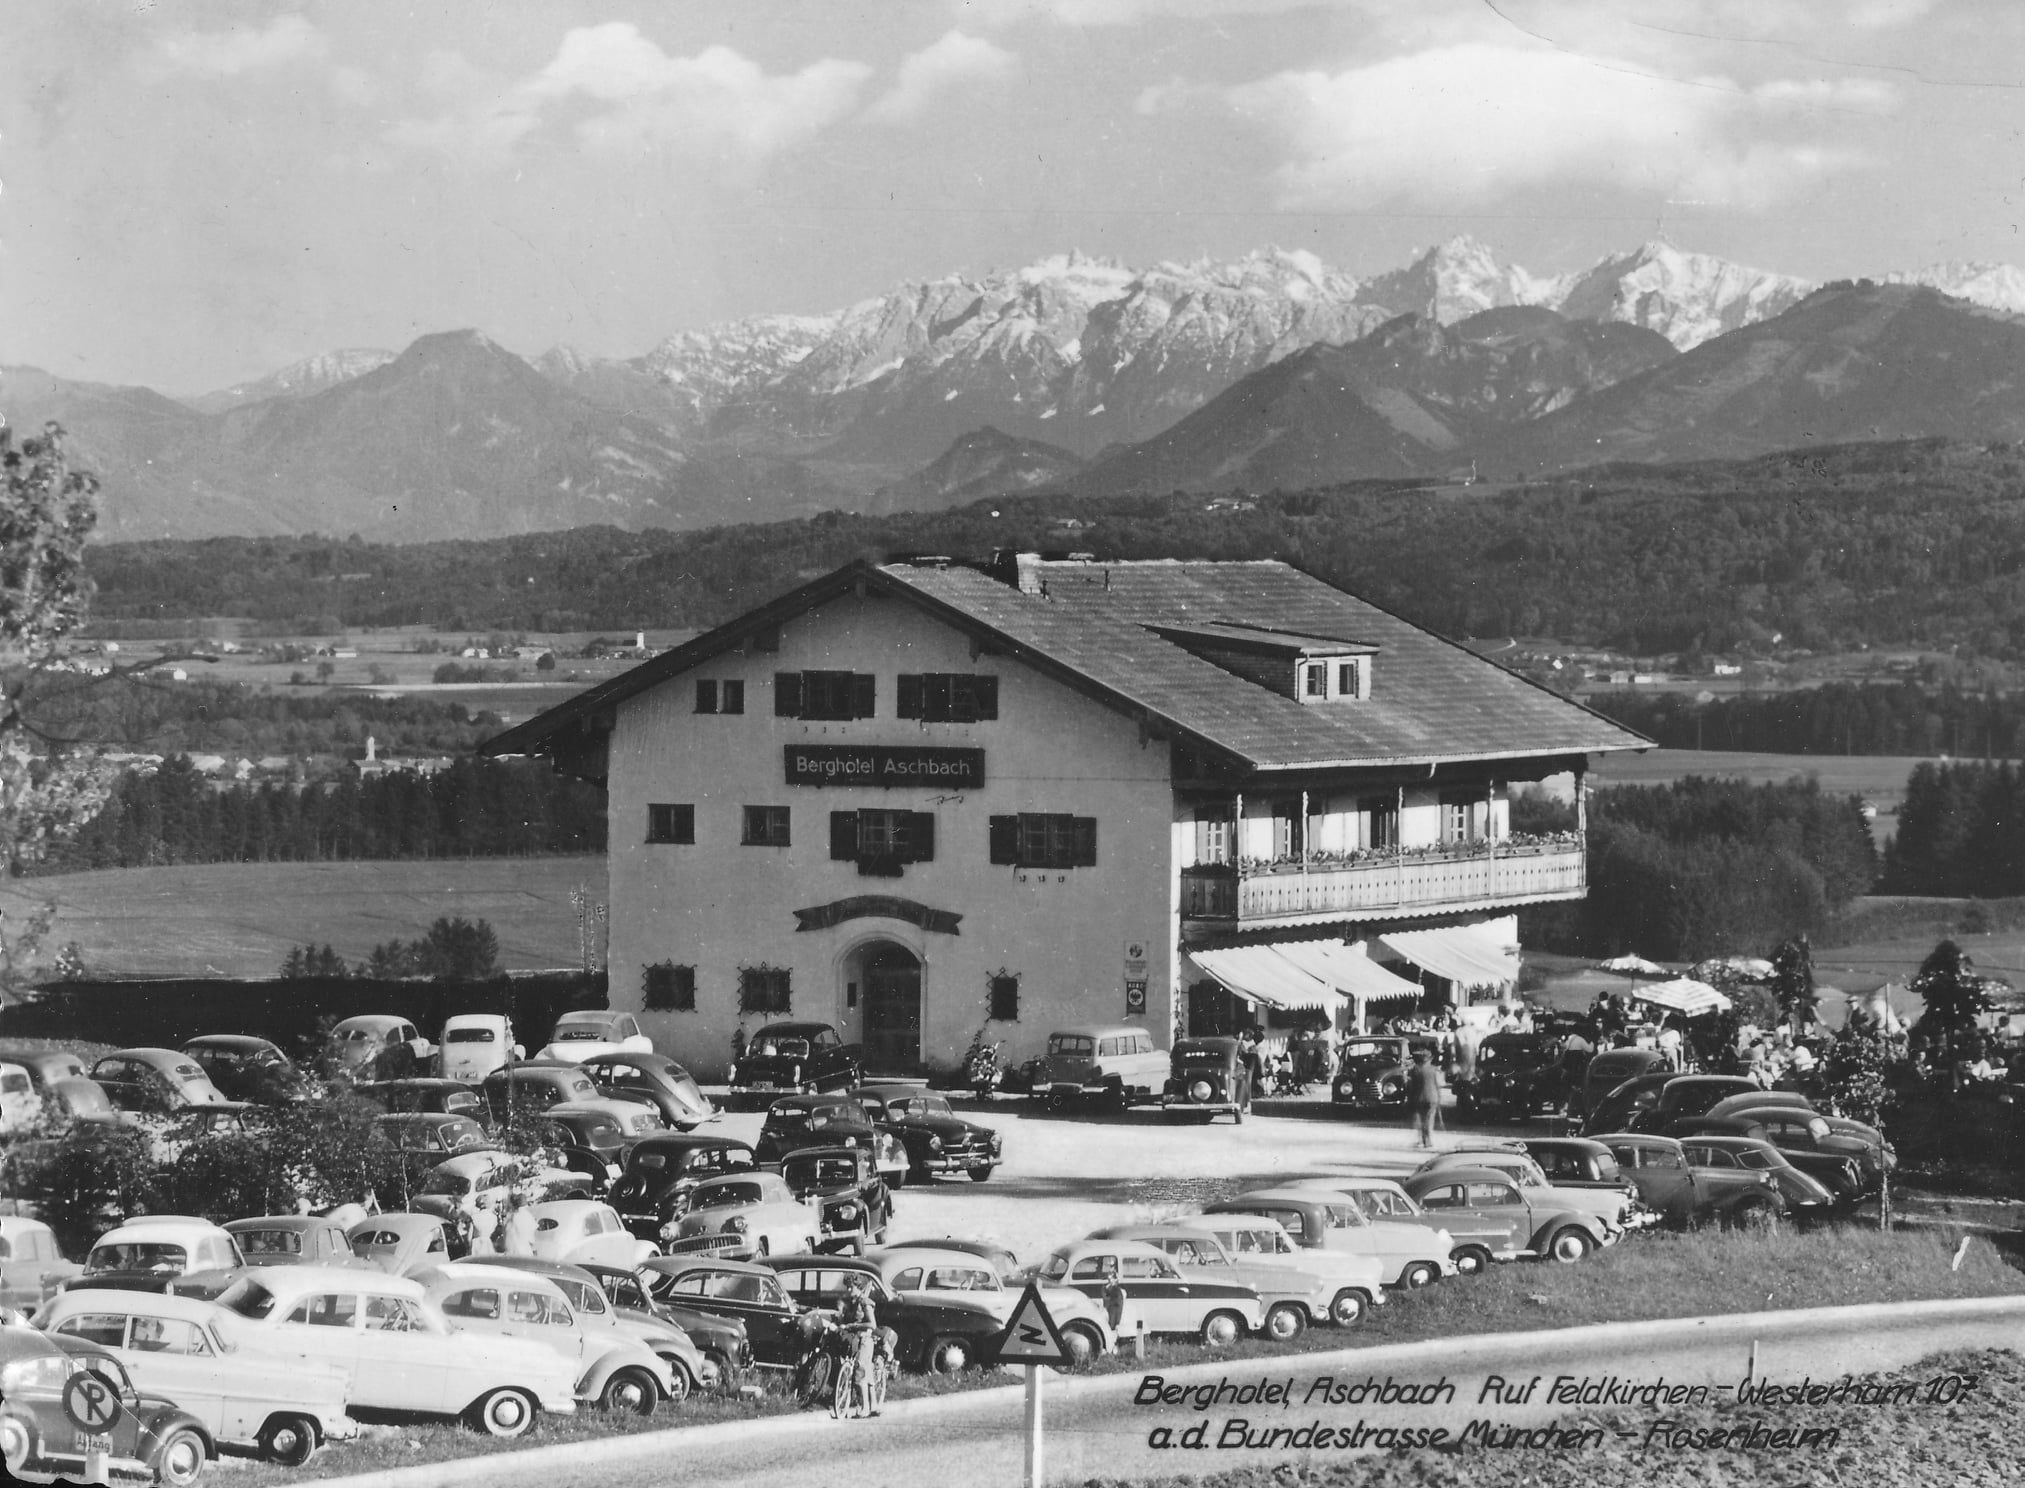 Gasthof mit Bergkulisse im Hintergrund. Davor parken viele Autos, die 1952 angesagt waren. Schwarz-Weiss-Aufnahme